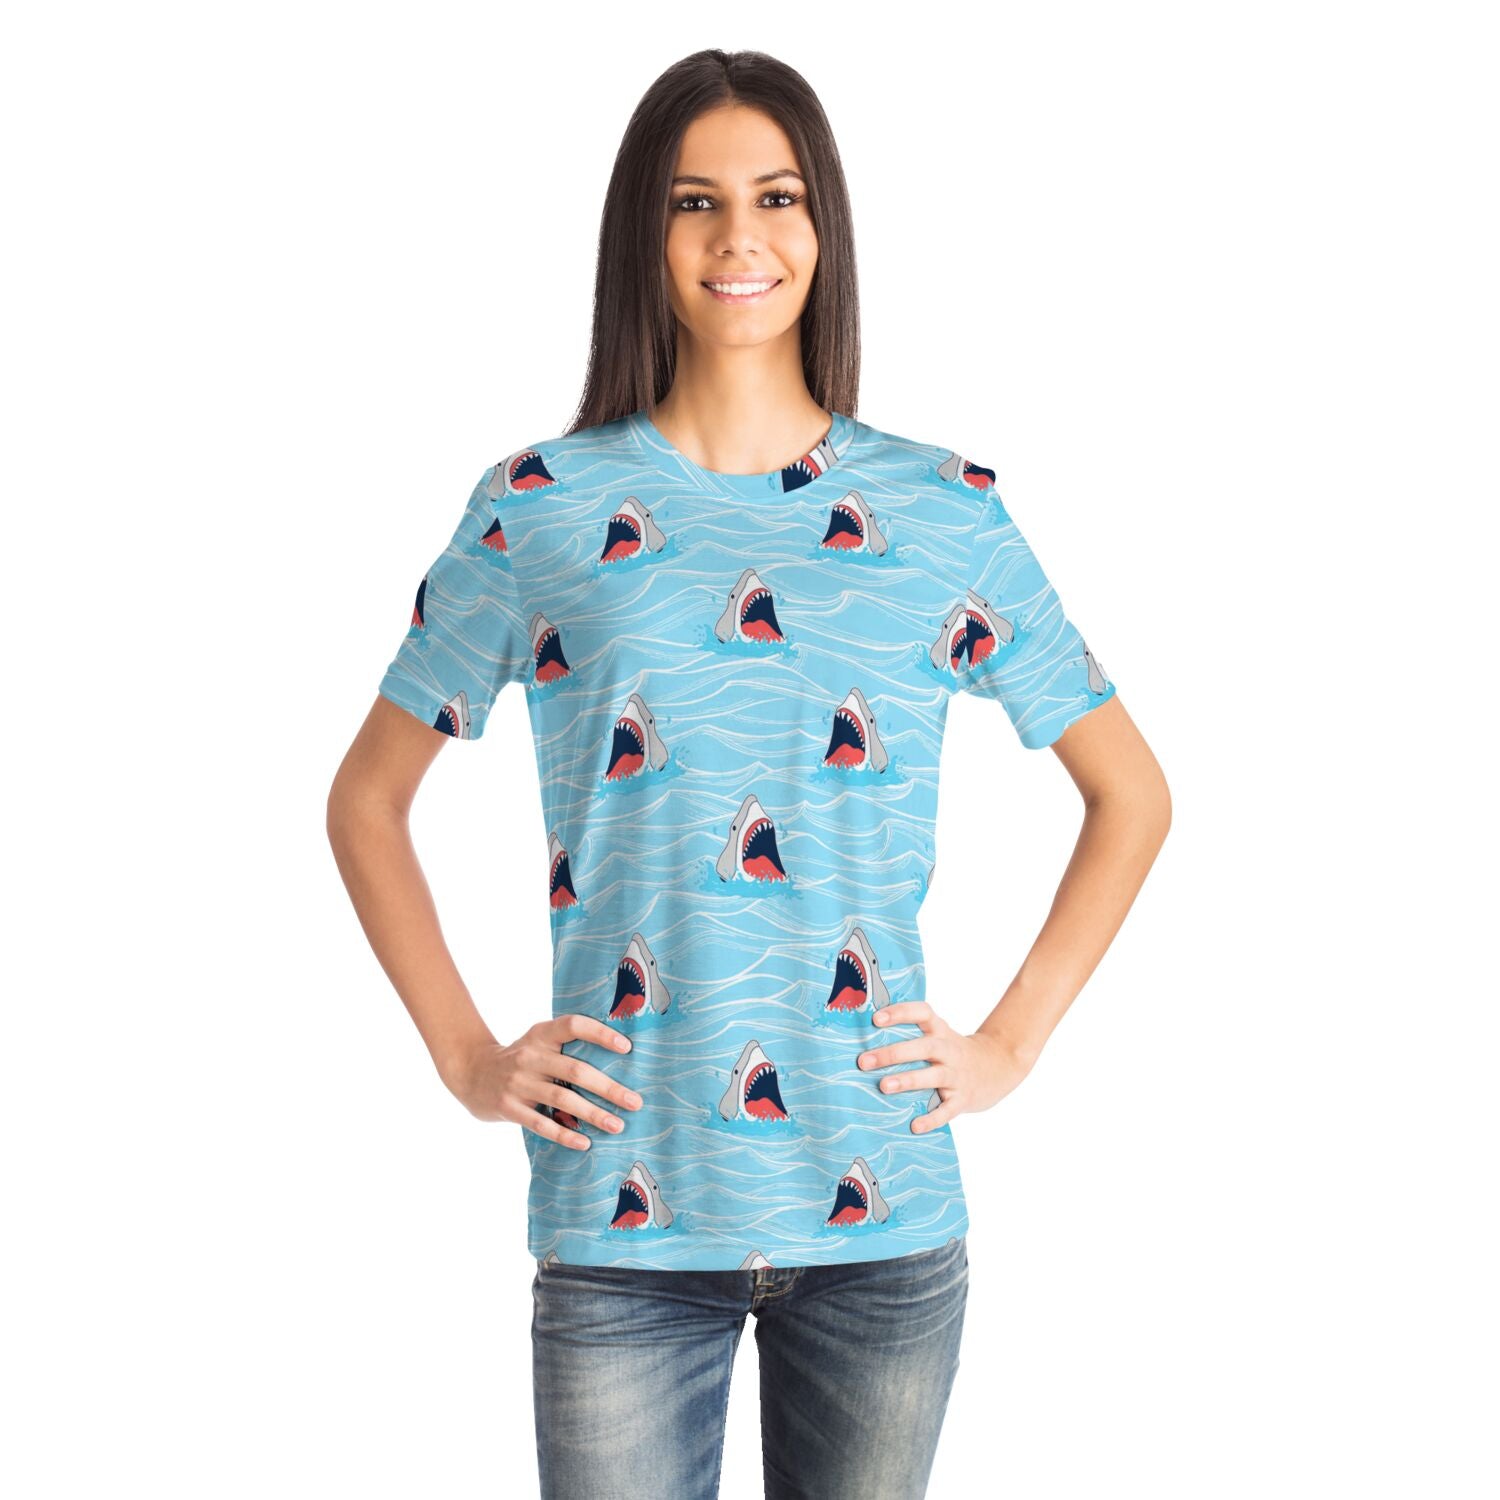 Rad Palm Shark Bait Unisex T-Shirt